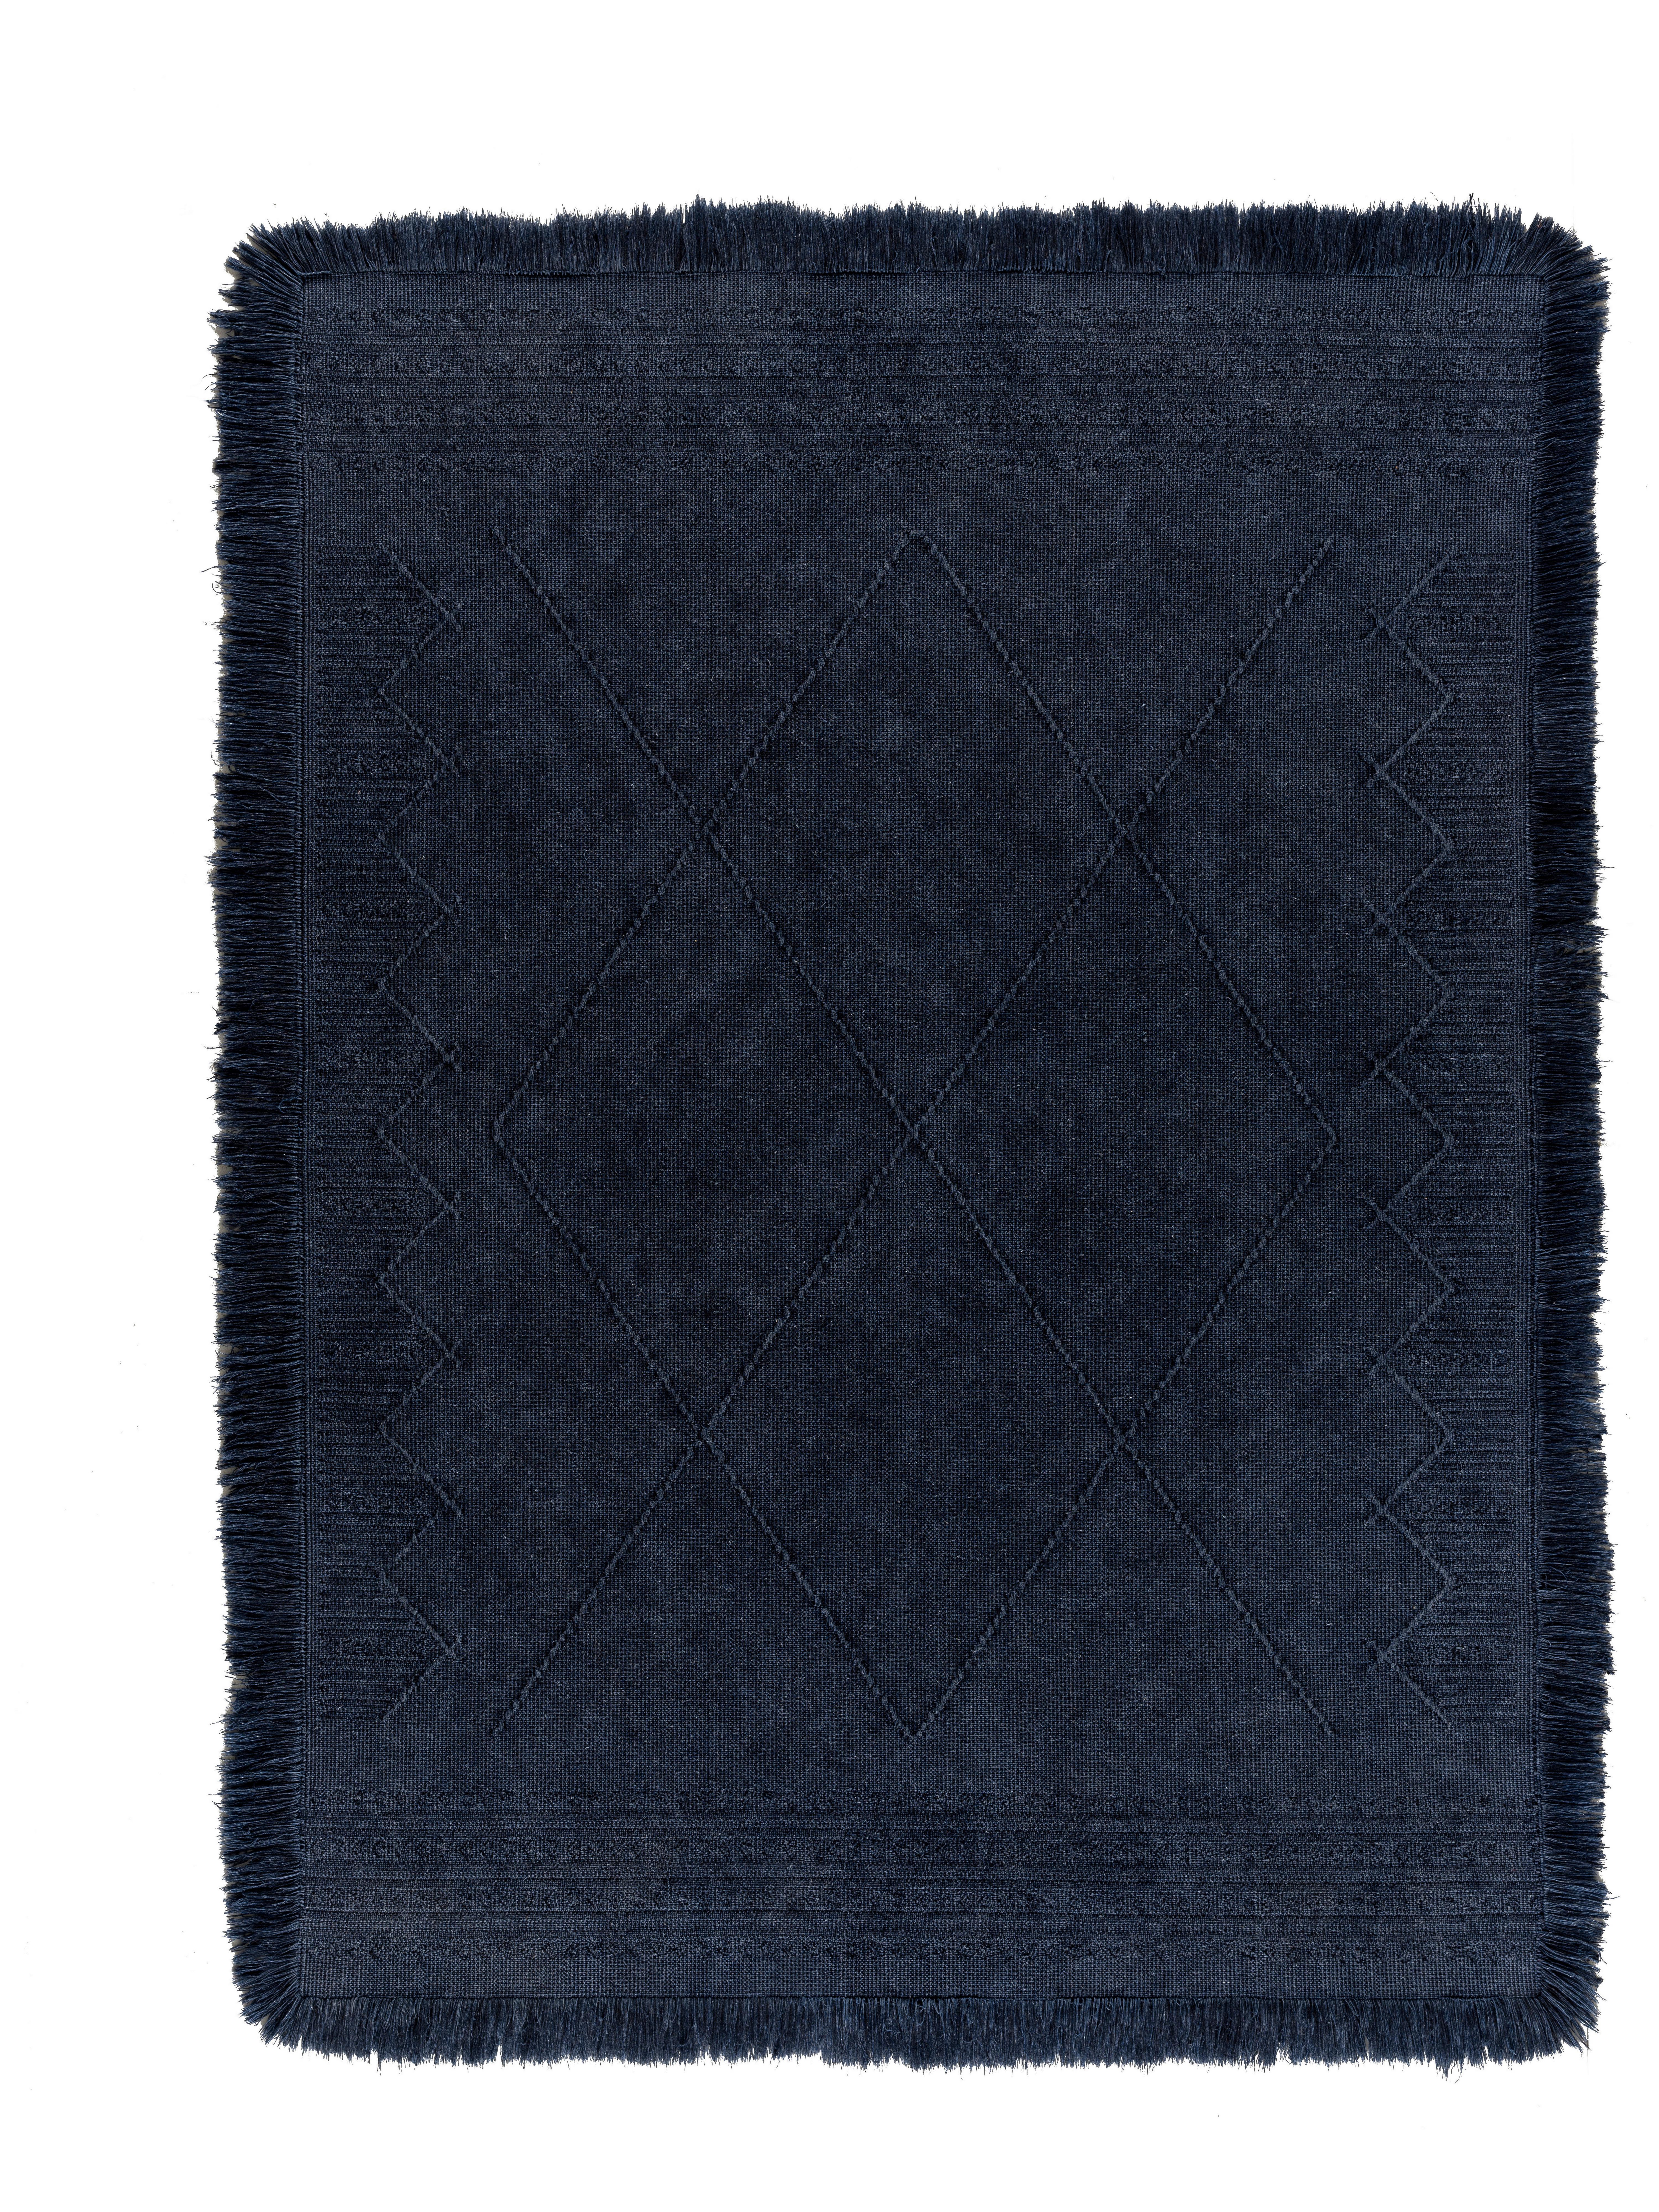 Ručne Tkaný Koberec Monaco 3, 160/230cm - tmavomodrá, textil (160/230cm) - Modern Living